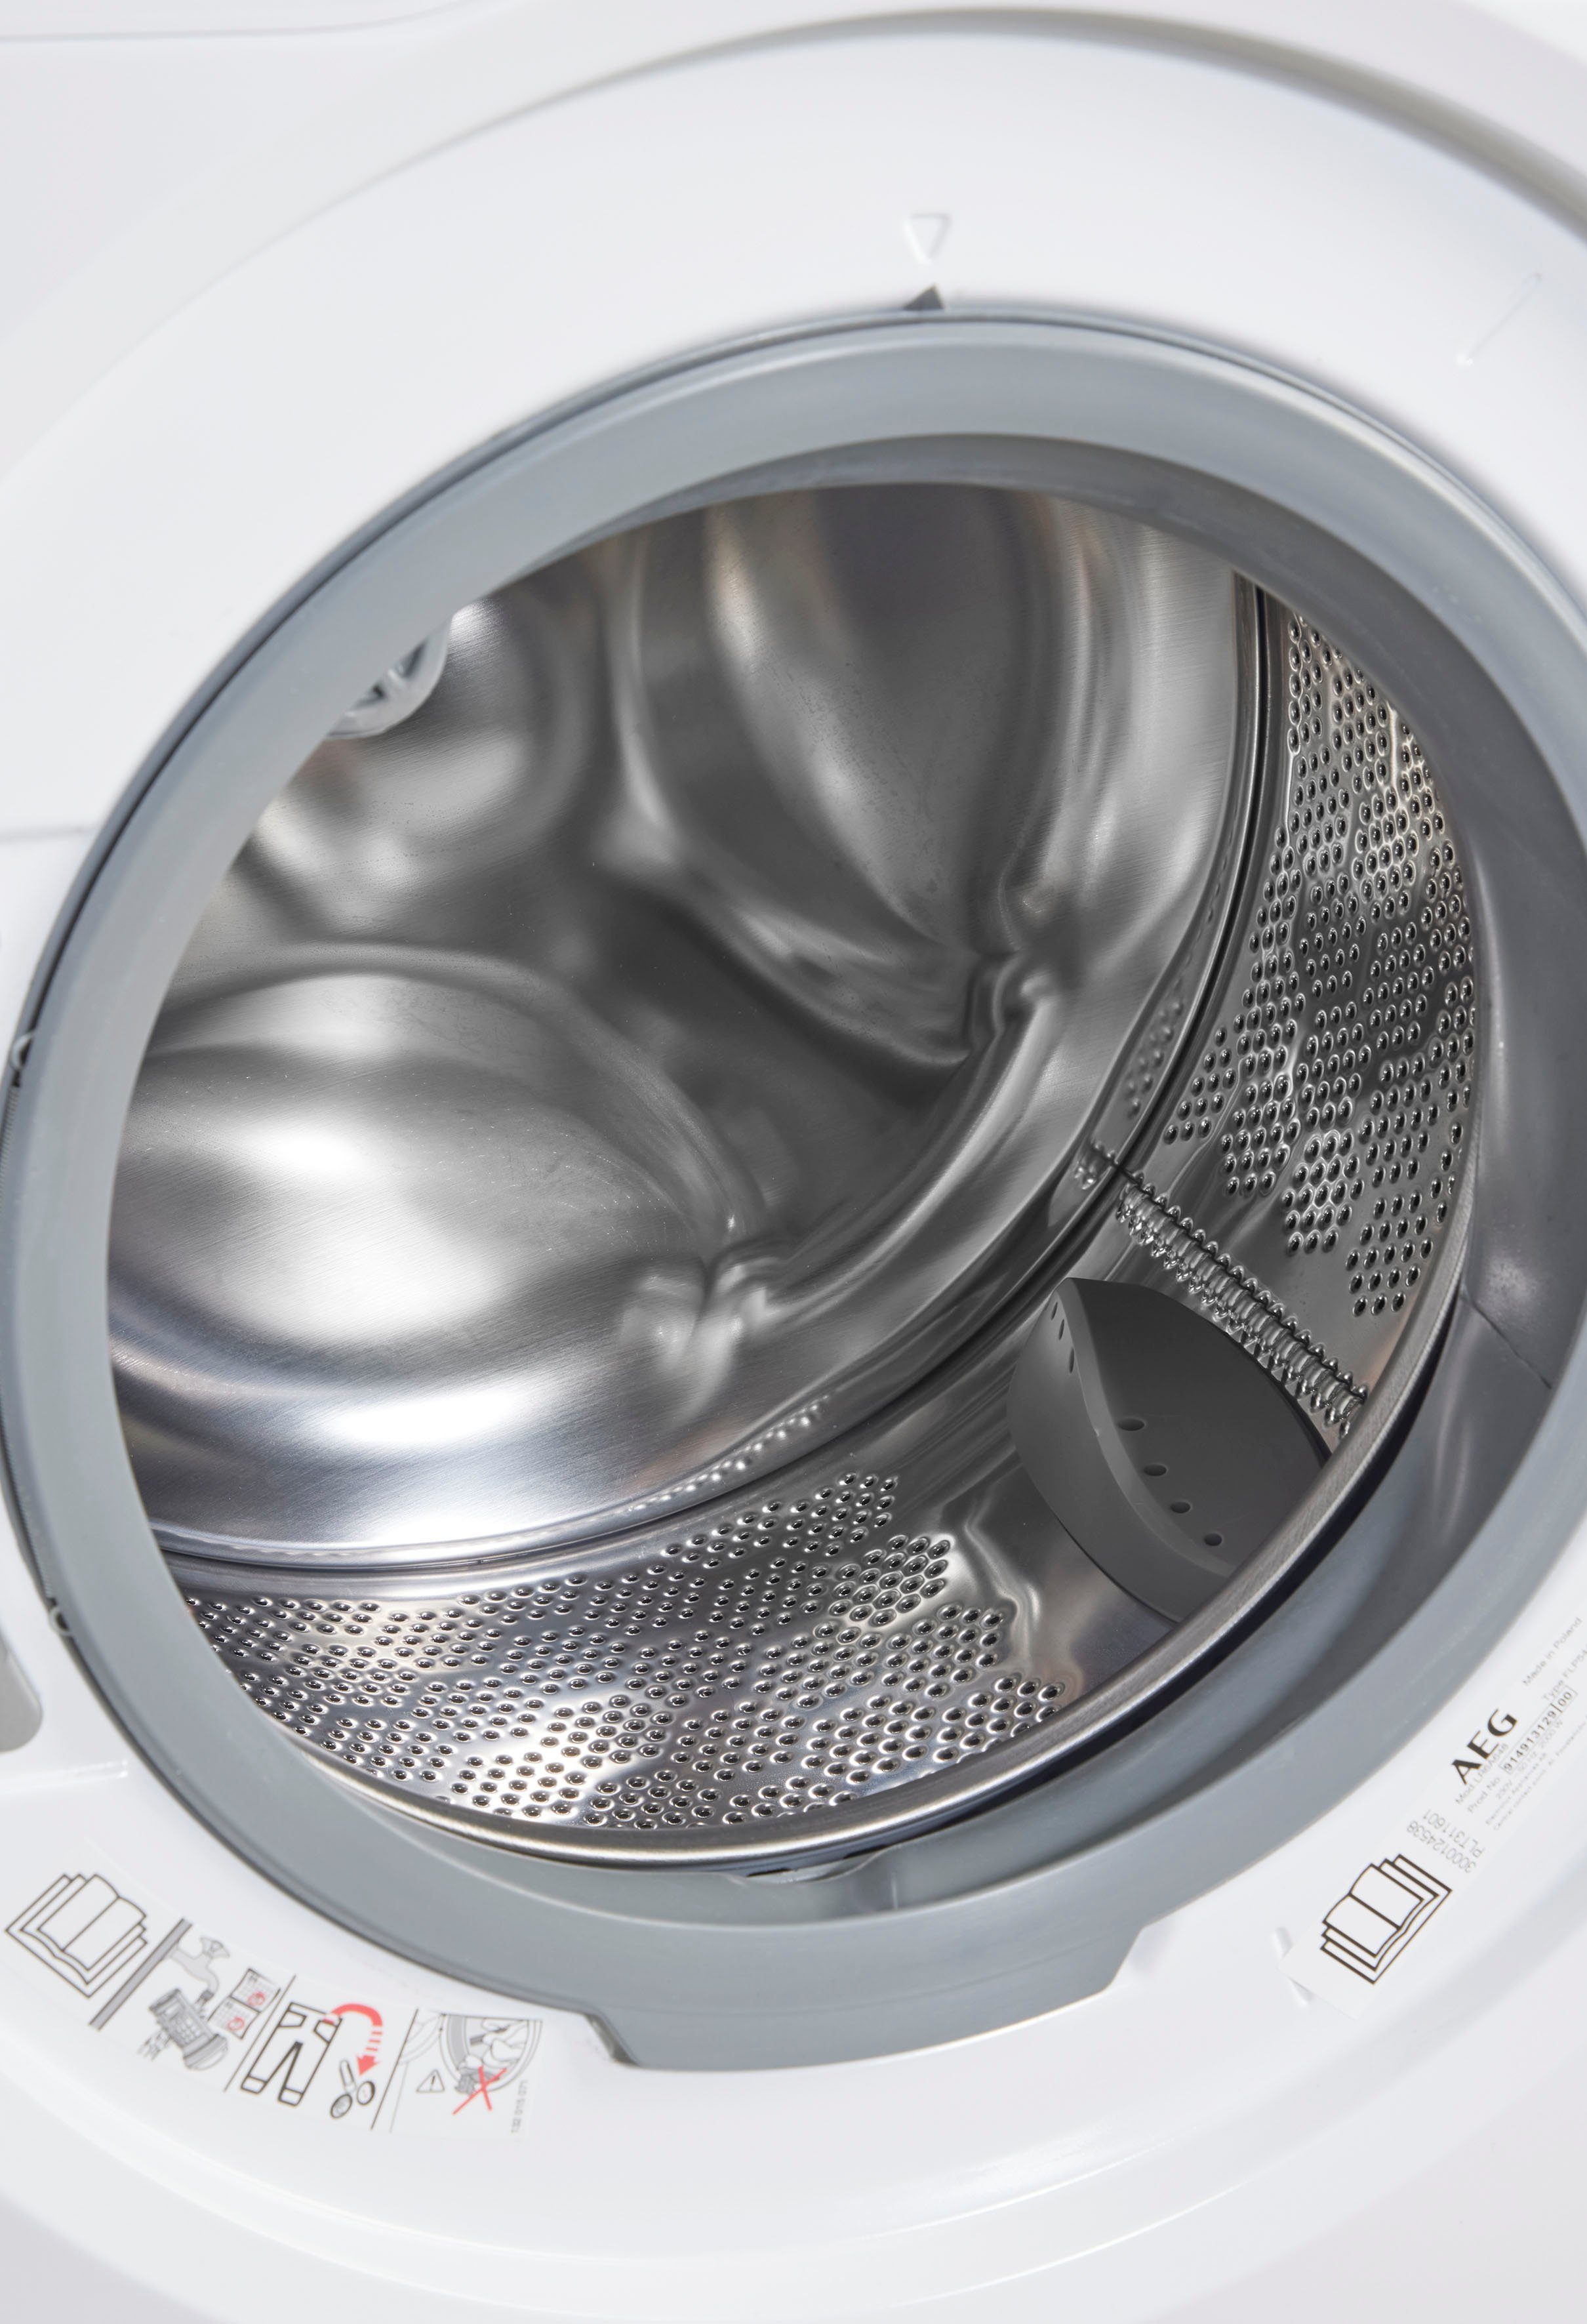 8 Waschmaschine Wasser AEG LR6A648, - 6000 ProSense® 40% U/min, Zeit, kg, Mengenautomatik​ spart Energie 1400 bis und